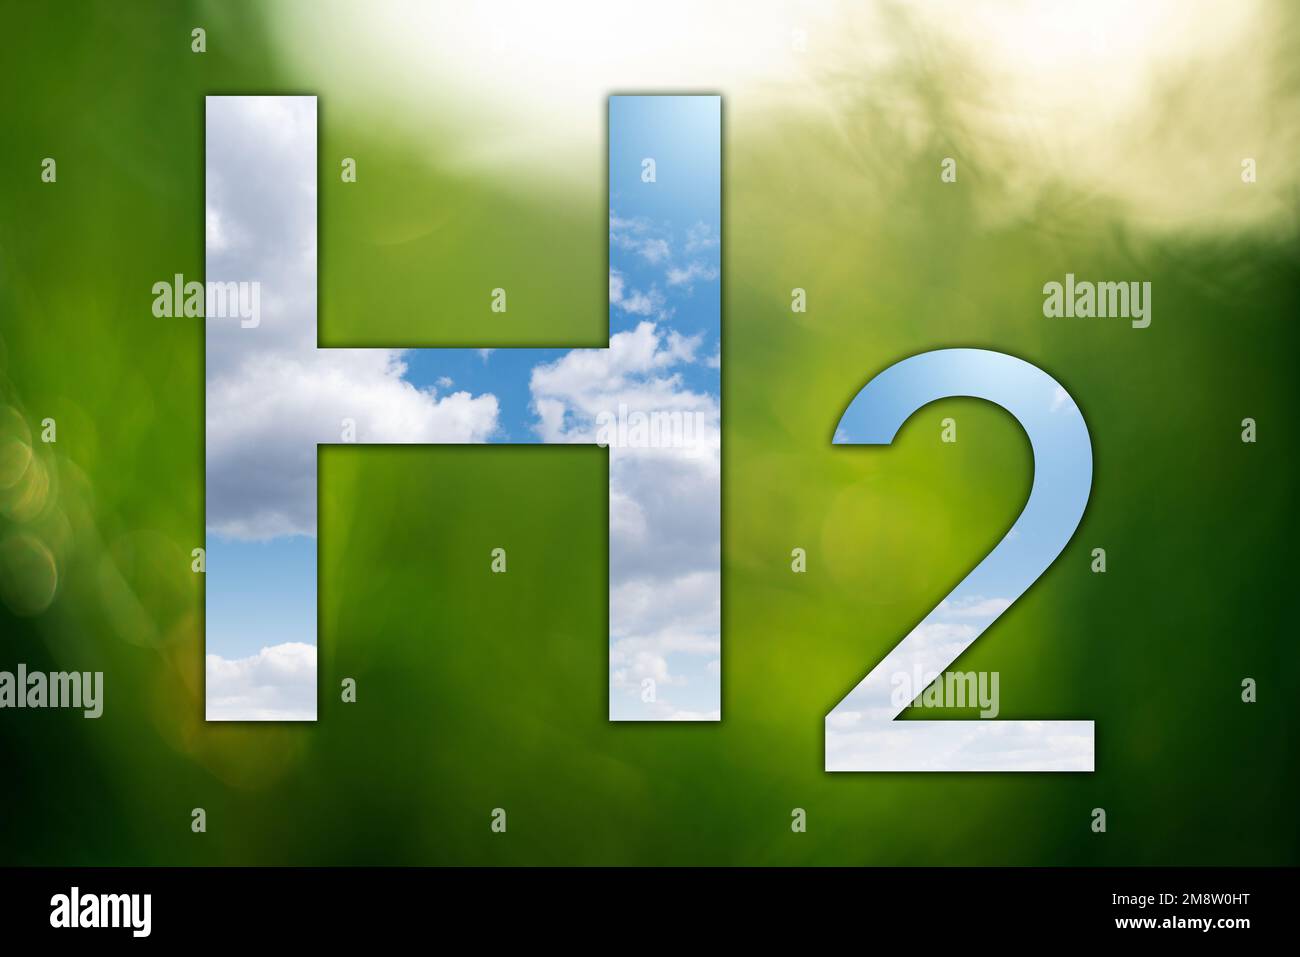 Espejo en forma de fórmula de hidrógeno H2 sobre fondo verde. Reflexión del cielo. Concepto de obtener hidrógeno verde de fuentes de energía renovables Foto de stock